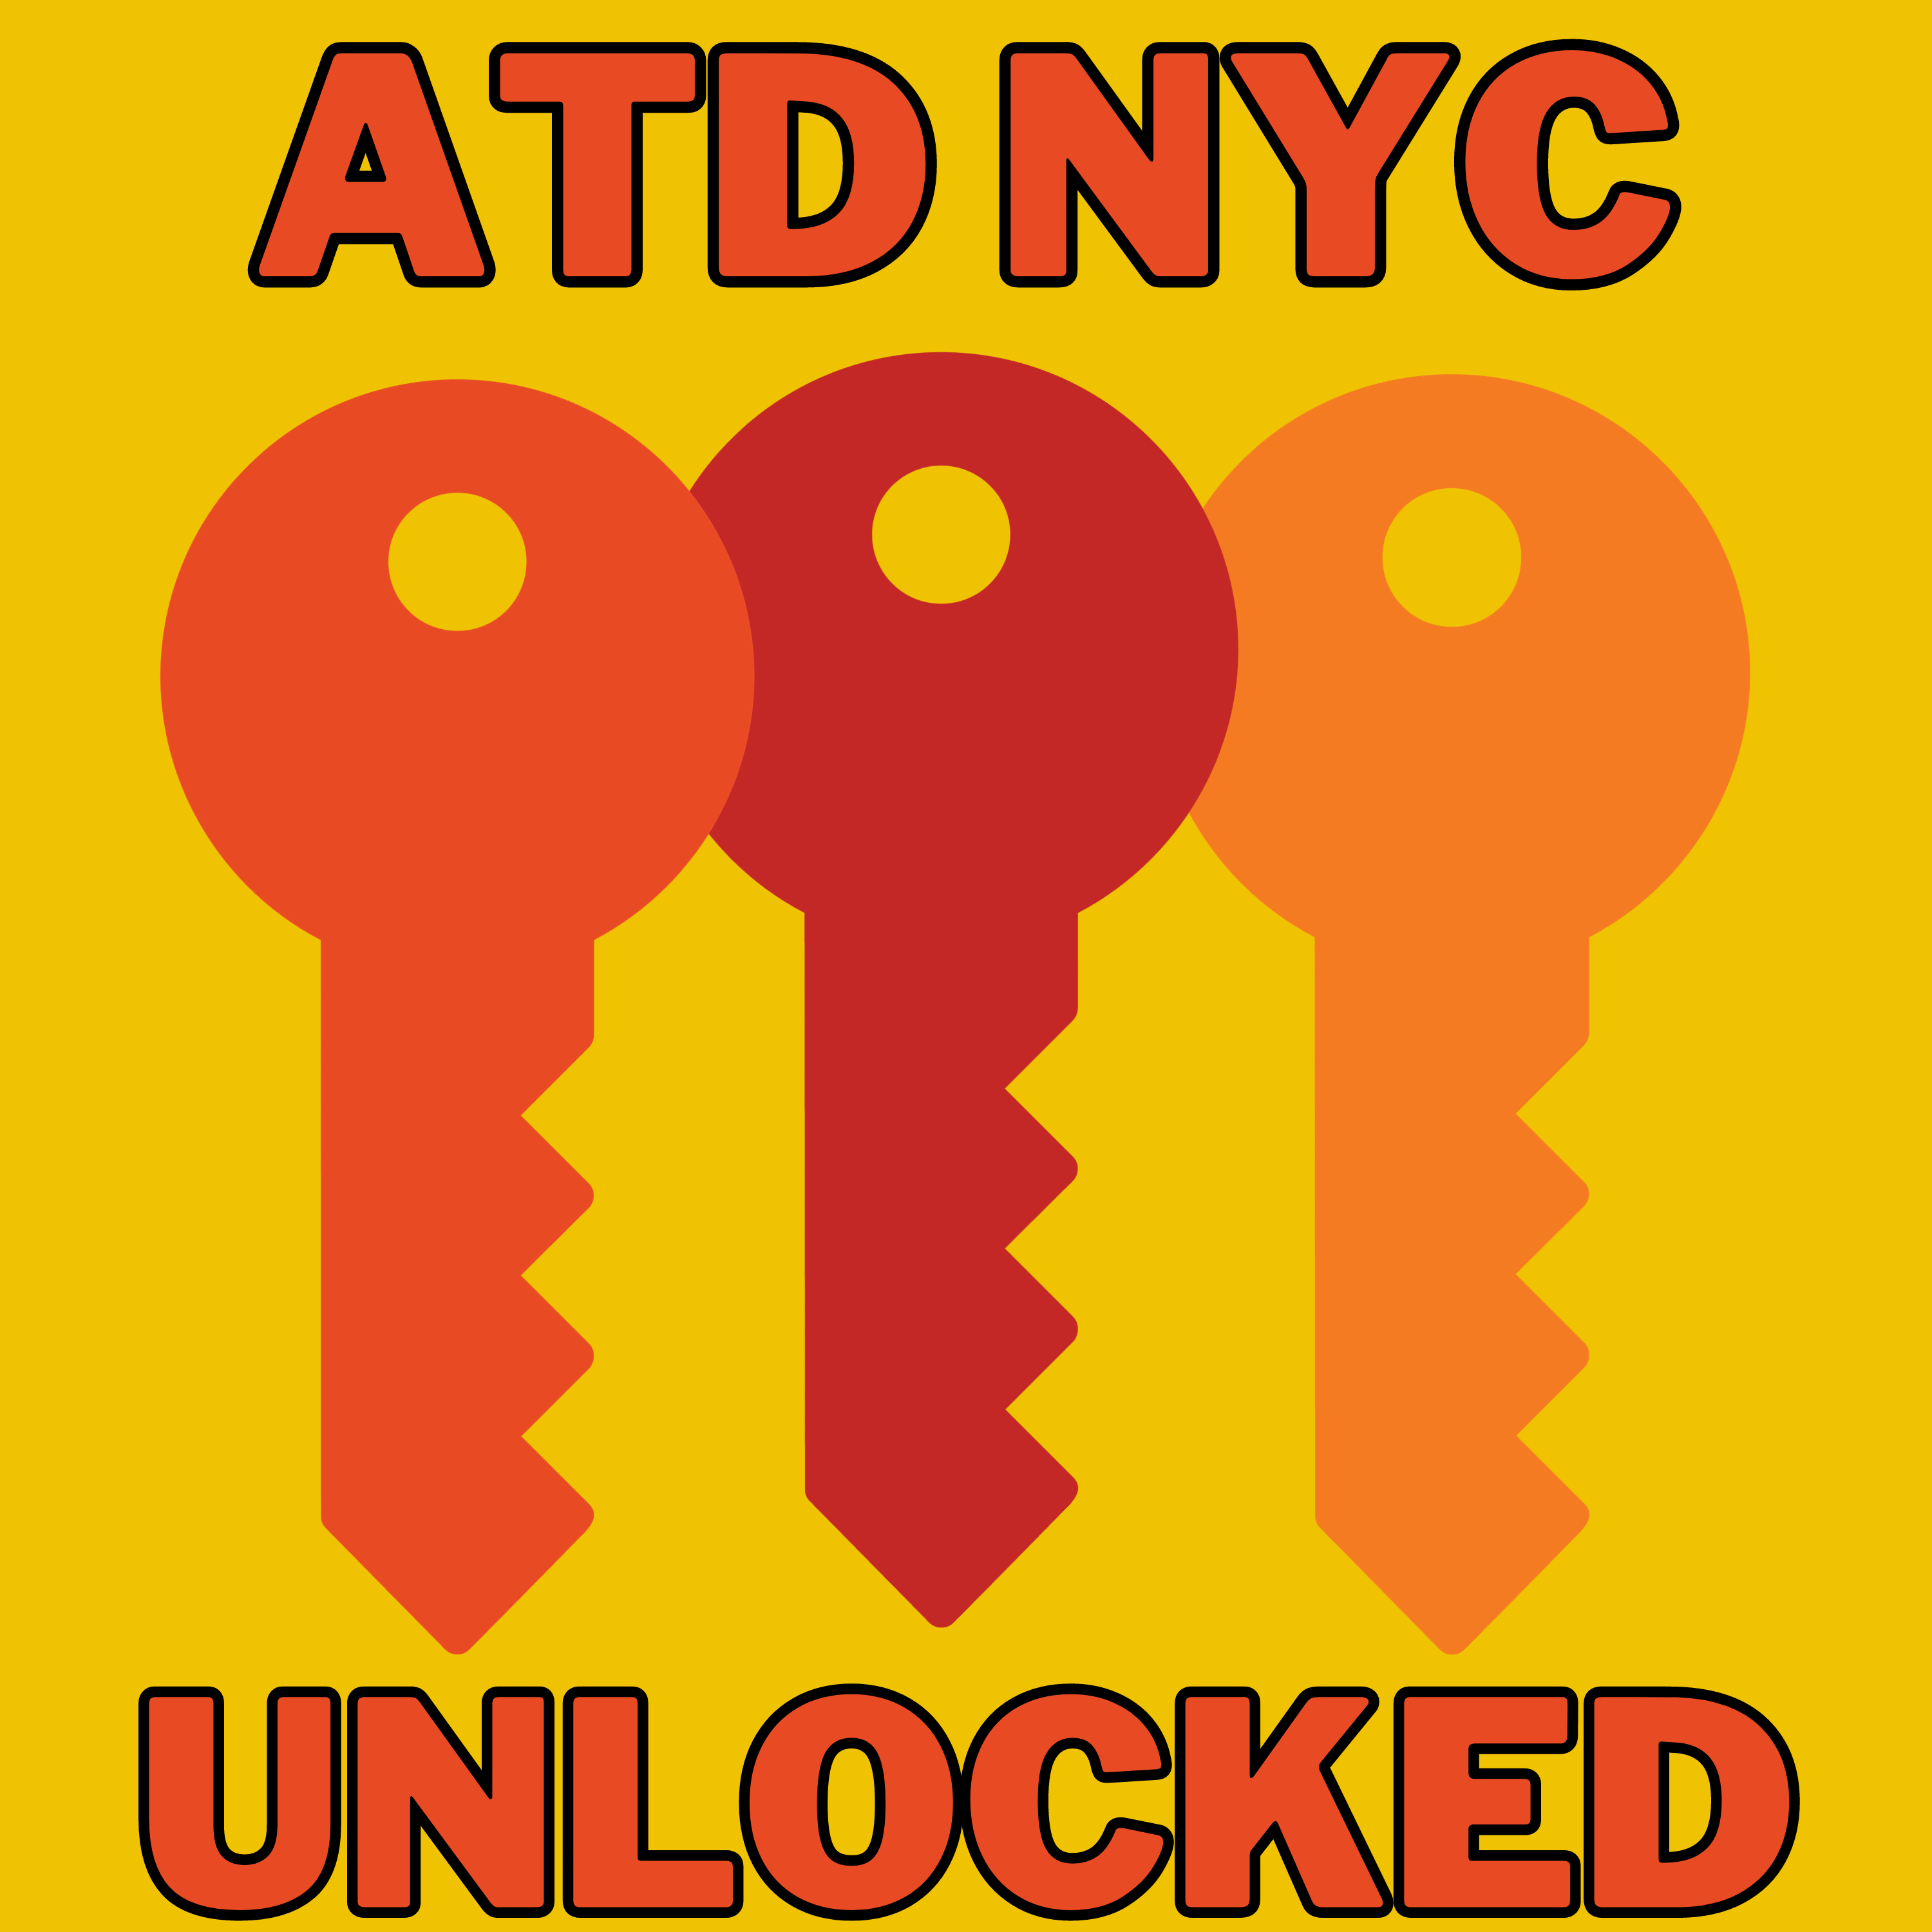 ATD NYC Unlocked